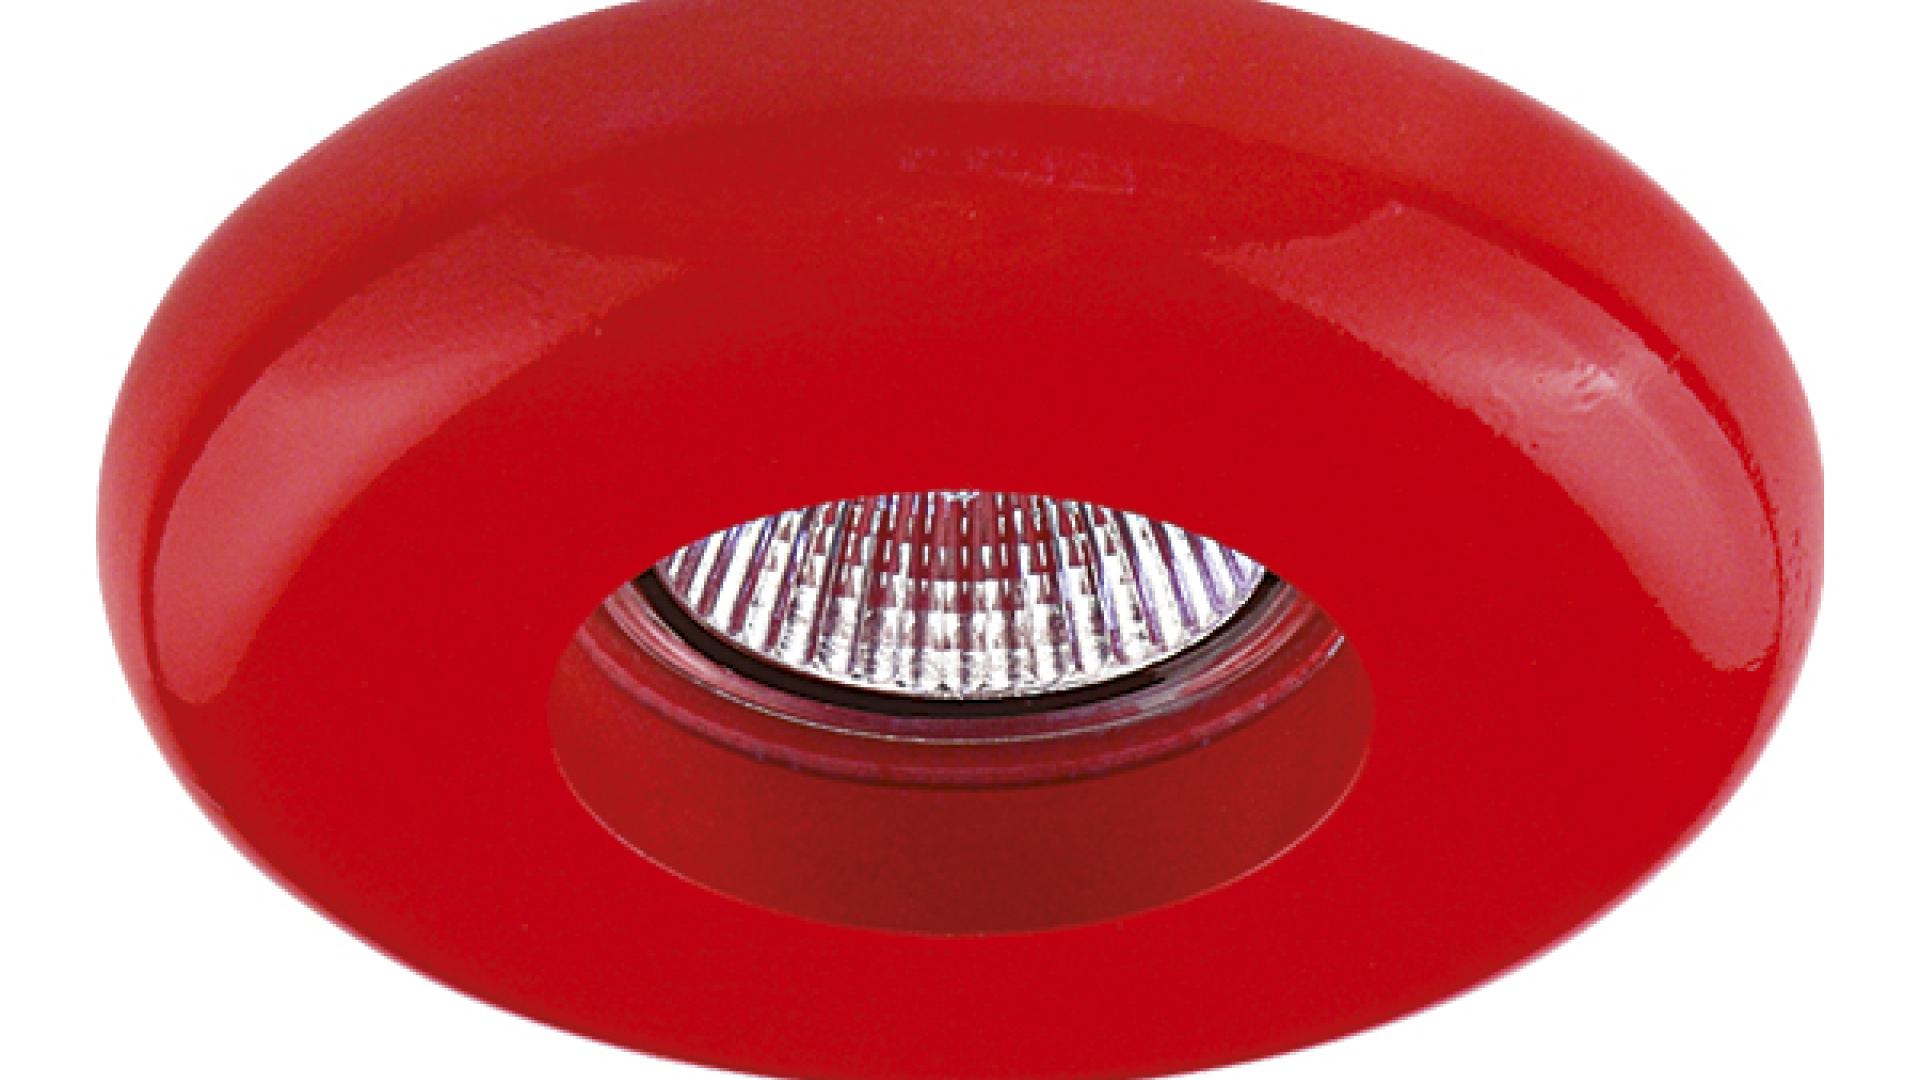 Светильник Infanta Rosso Mr16/hp16 Красный 002751